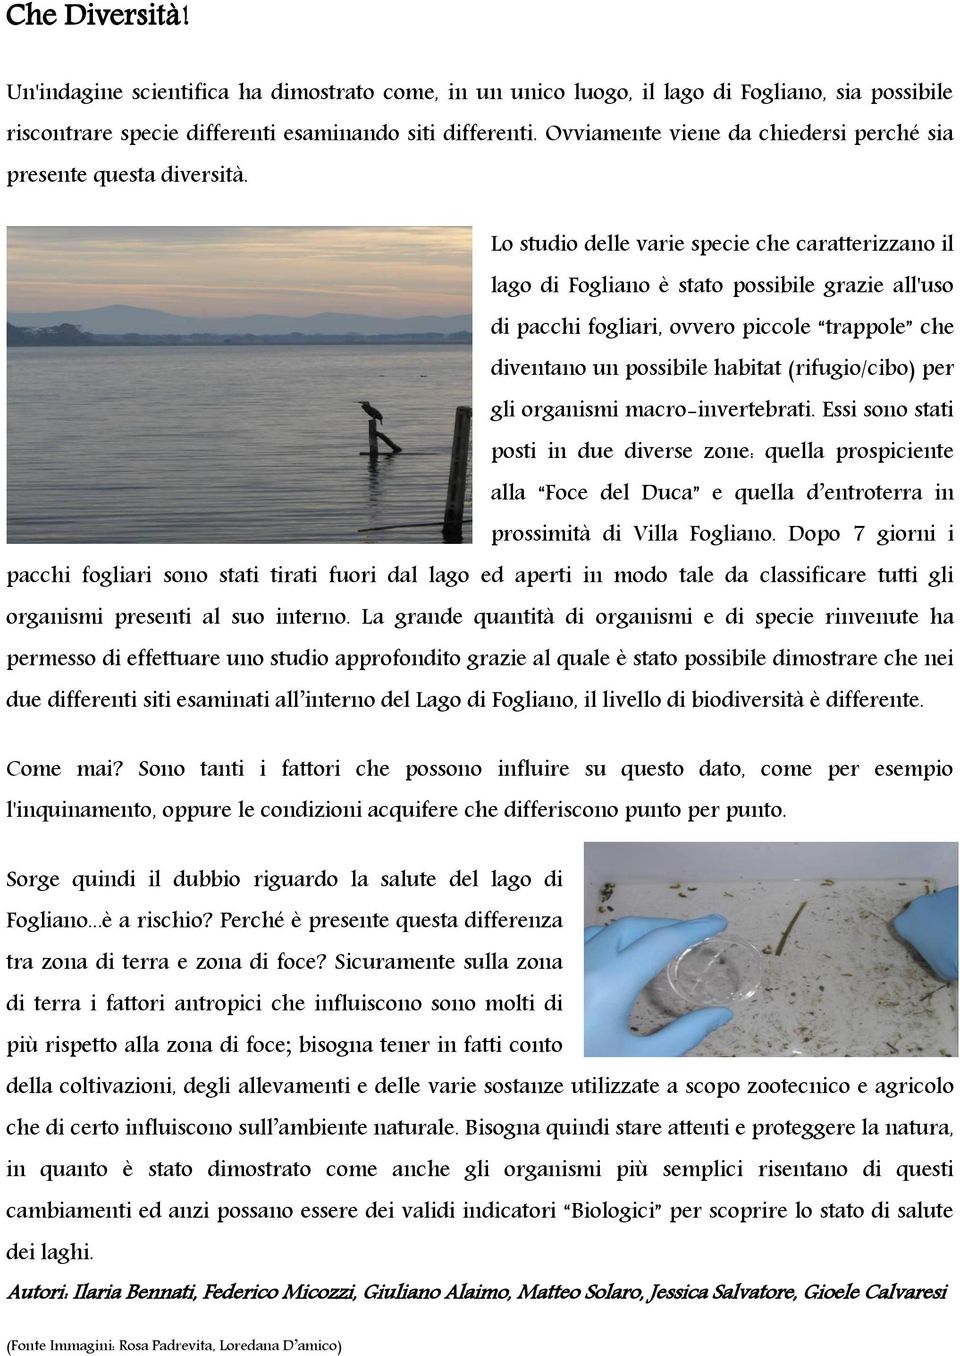 Lo studio delle varie specie che caratterizzano il lago di Fogliano è stato possibile grazie all'uso di pacchi fogliari, ovvero piccole trappole che diventano un possibile habitat (rifugio/cibo) per